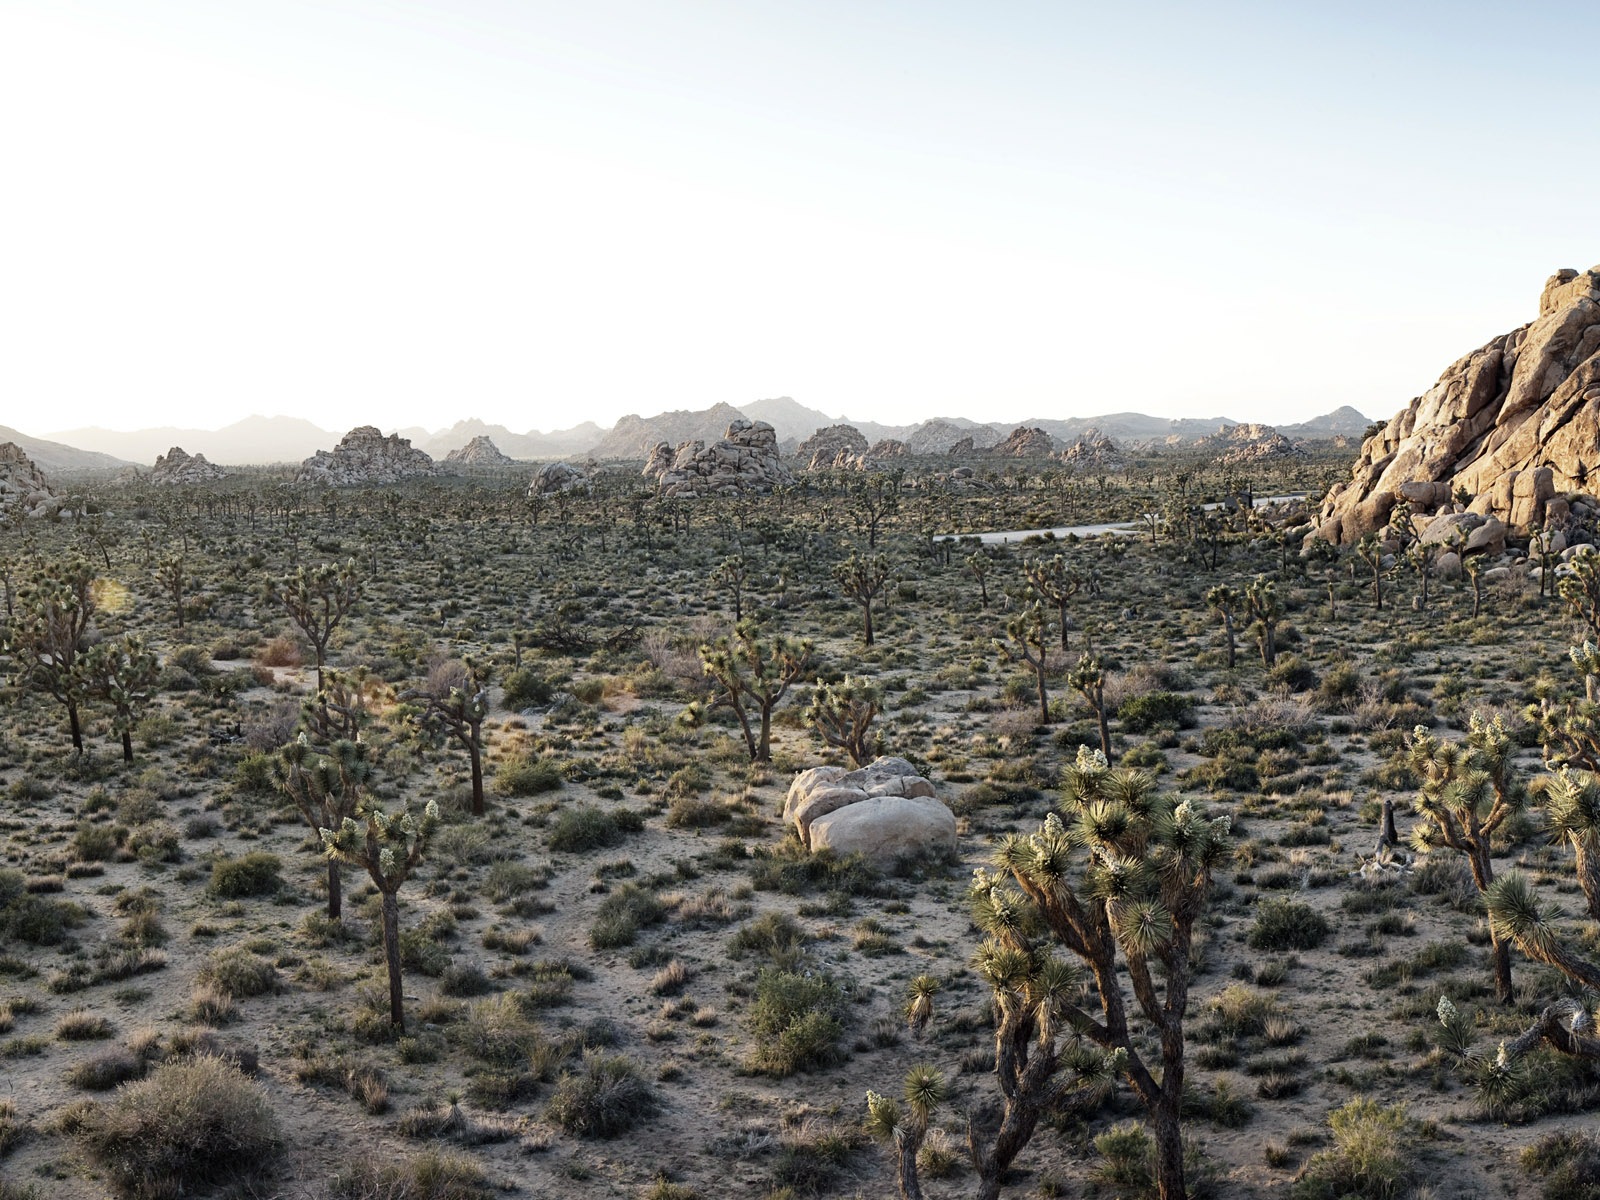 Les déserts chauds et arides, de Windows 8 fonds d'écran widescreen panoramique #9 - 1600x1200